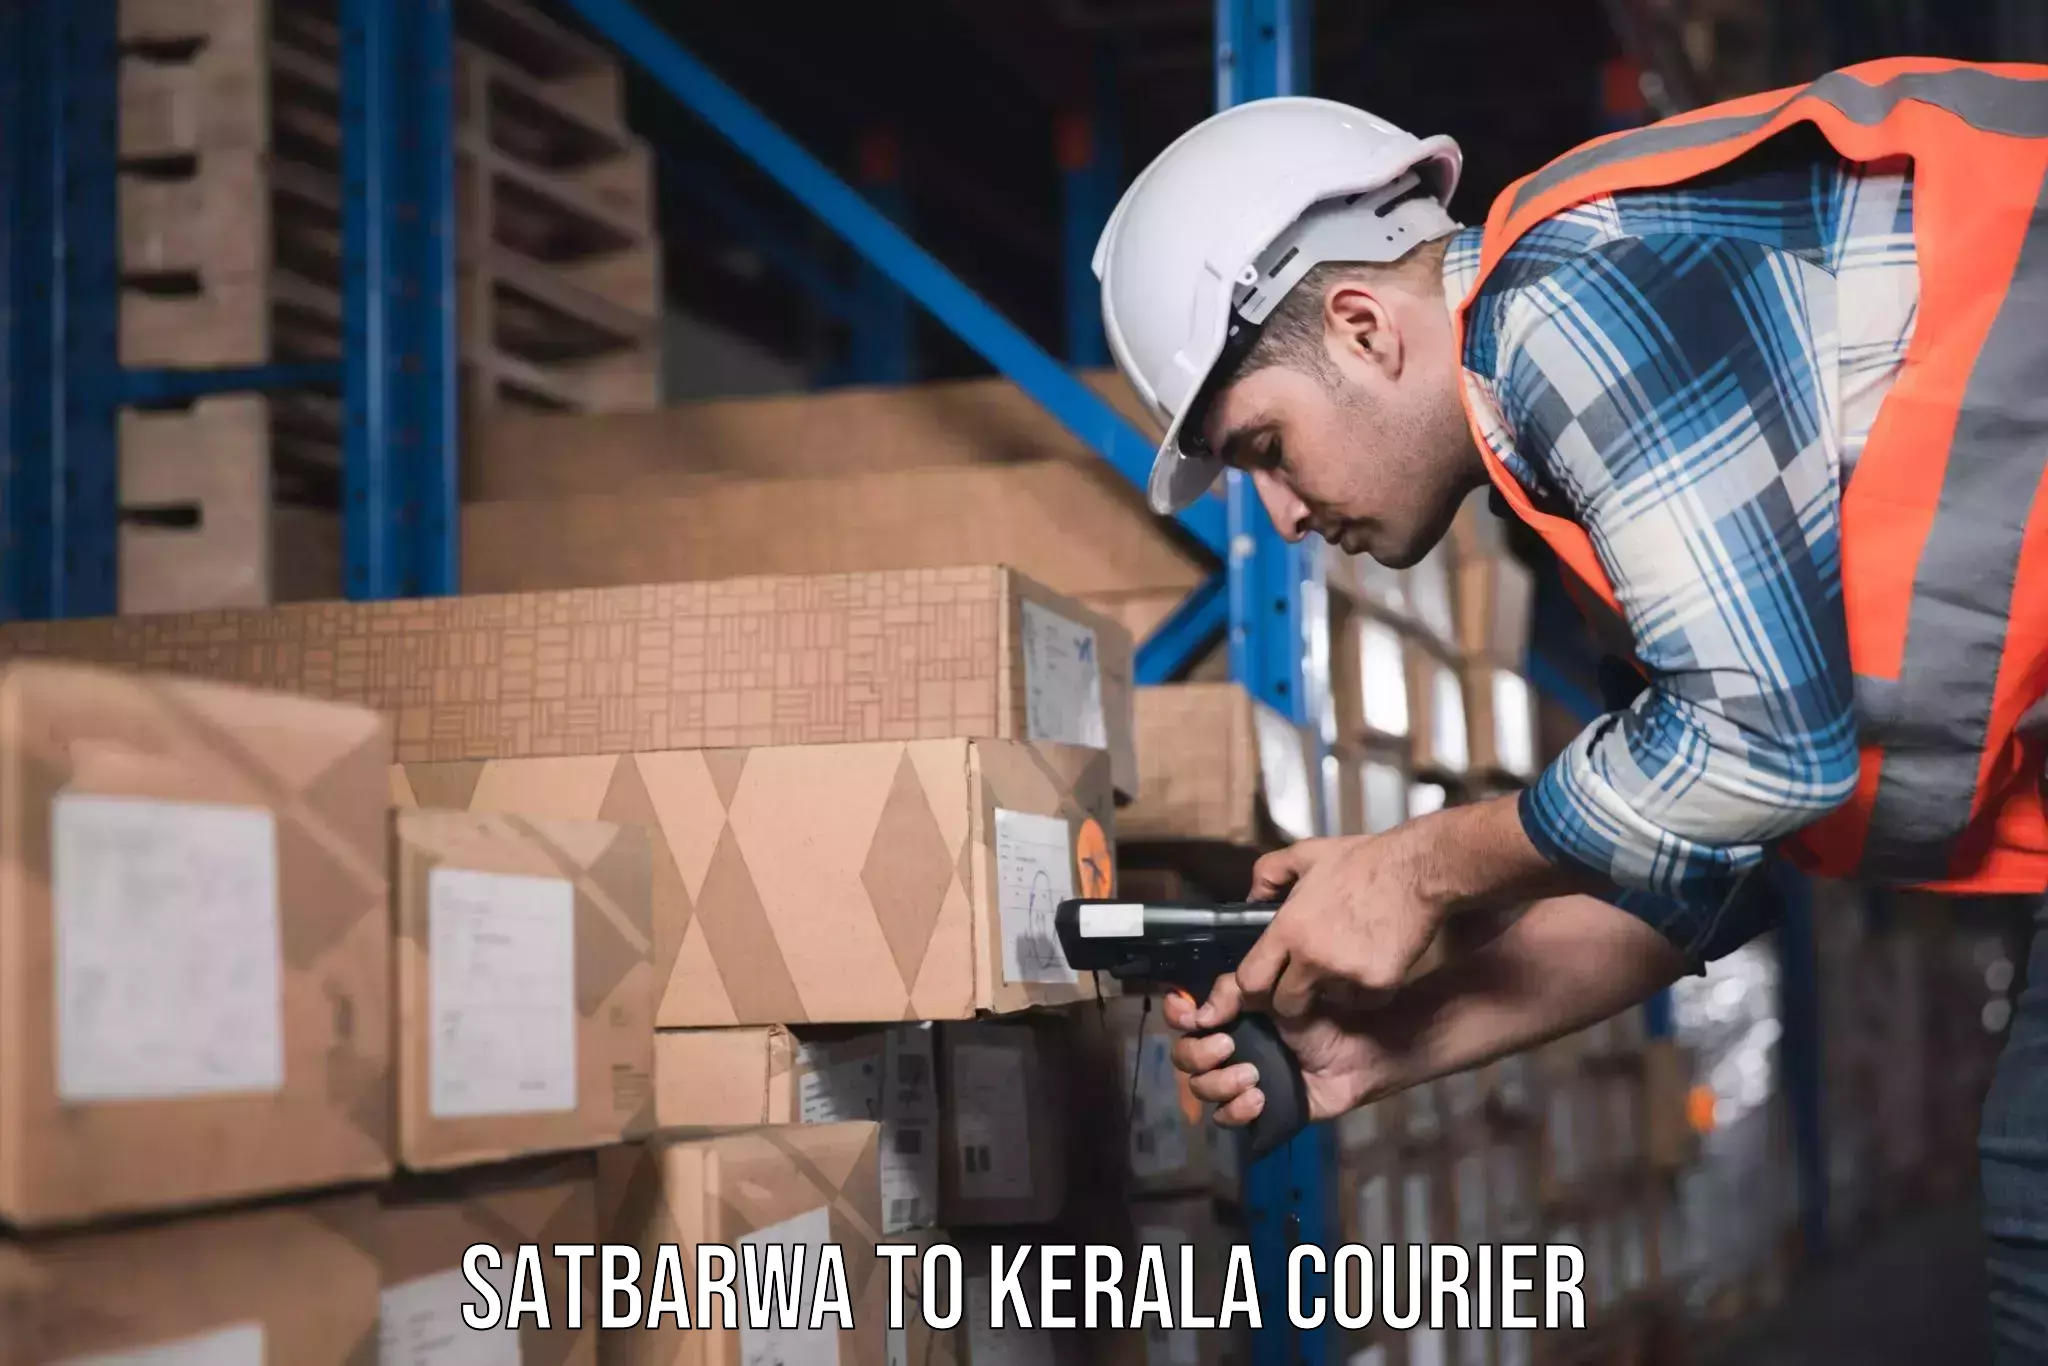 Furniture transport company Satbarwa to Kerala